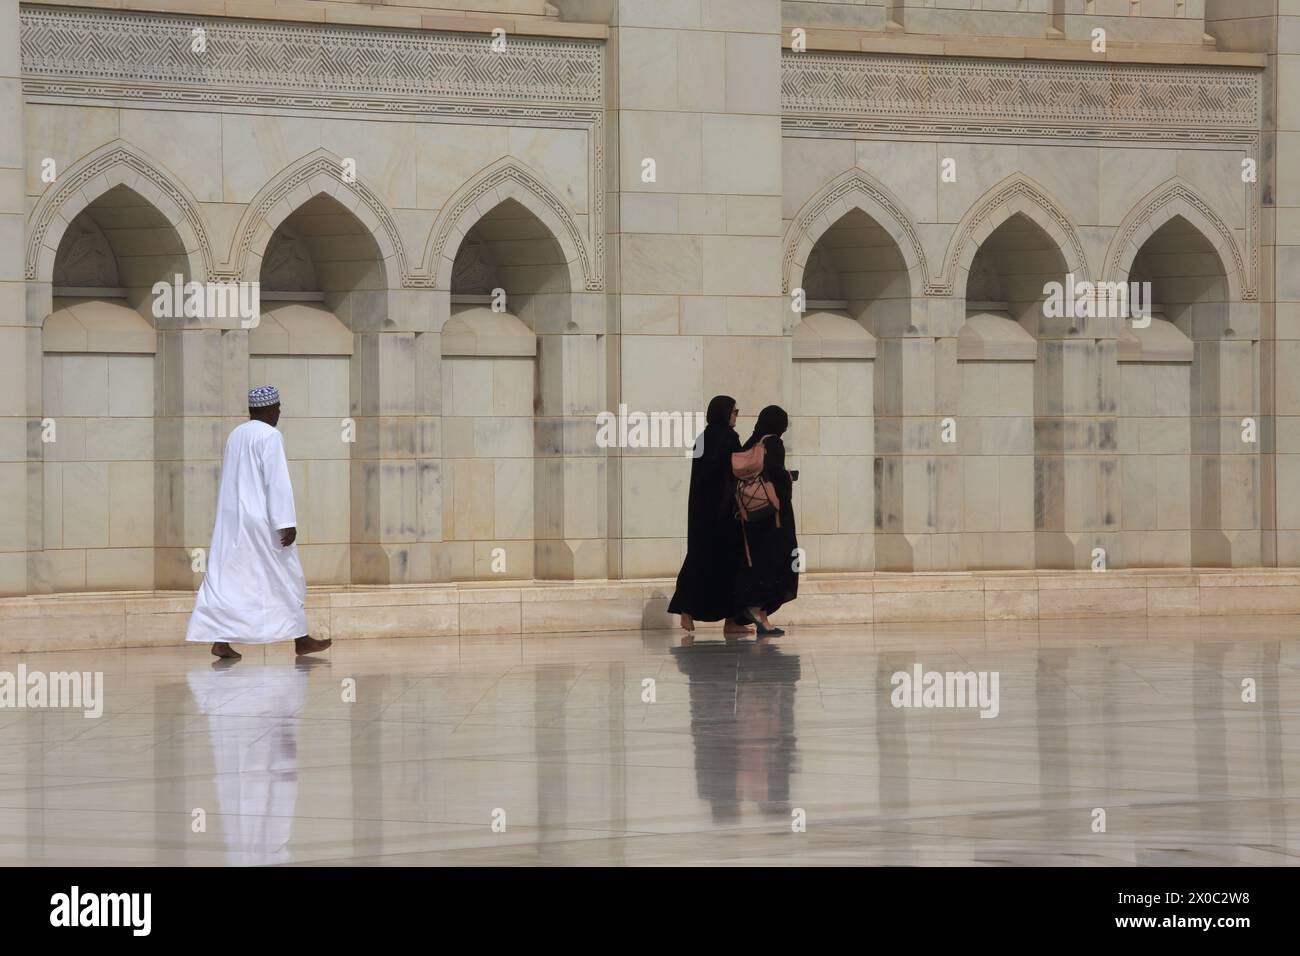 Sultan Qaboos Grand Mosquée visiteurs en robe traditionnelle homme Omani homme portant Kummah et dishdasha et femmes portant l'Abaya Muscat Oman Banque D'Images